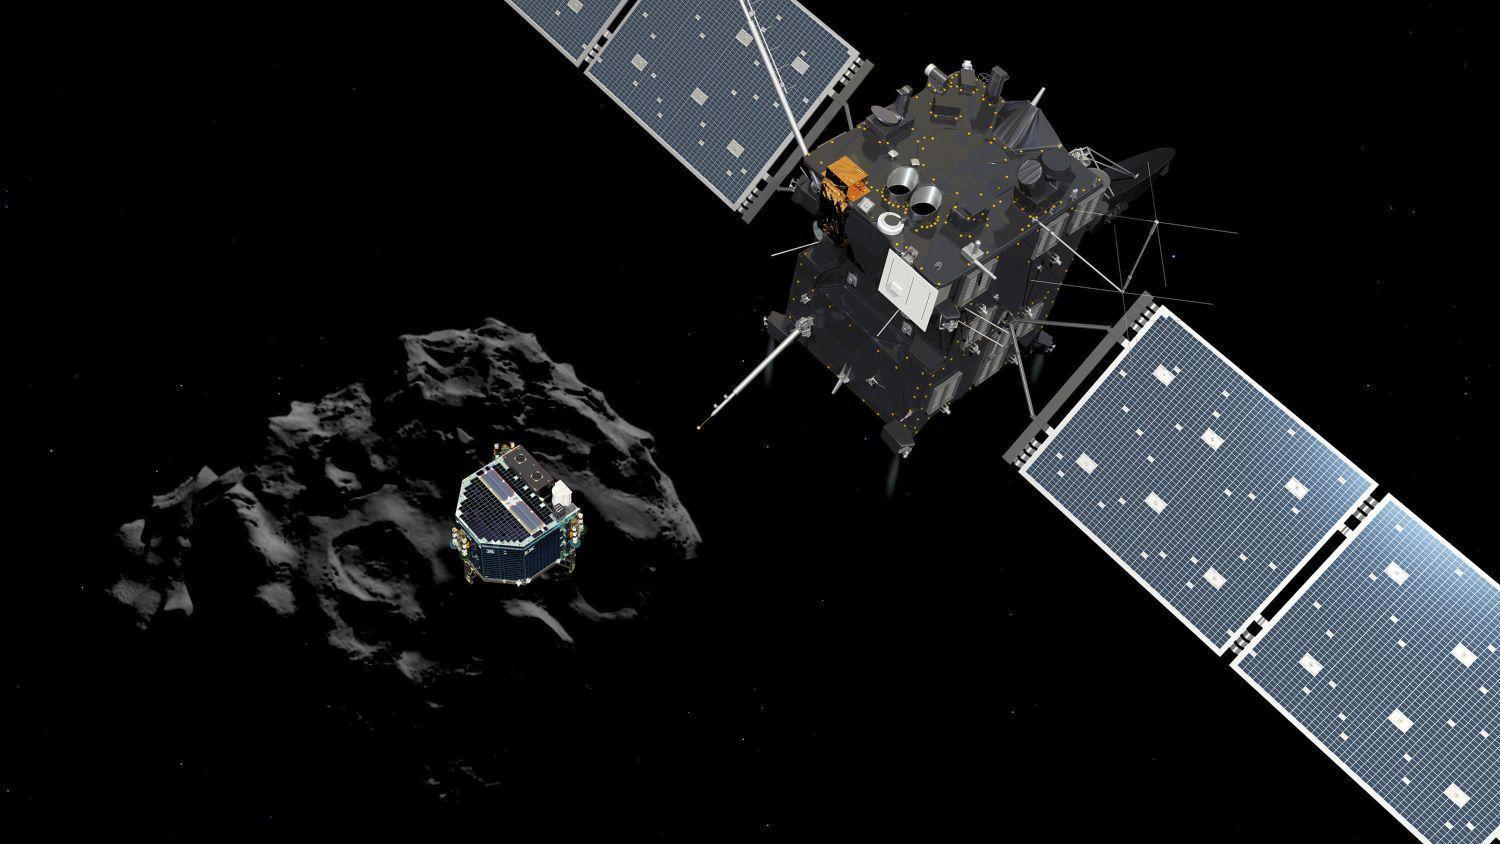 Fantáziarajz a Rosetta és a Csuri üstökös randevújáról